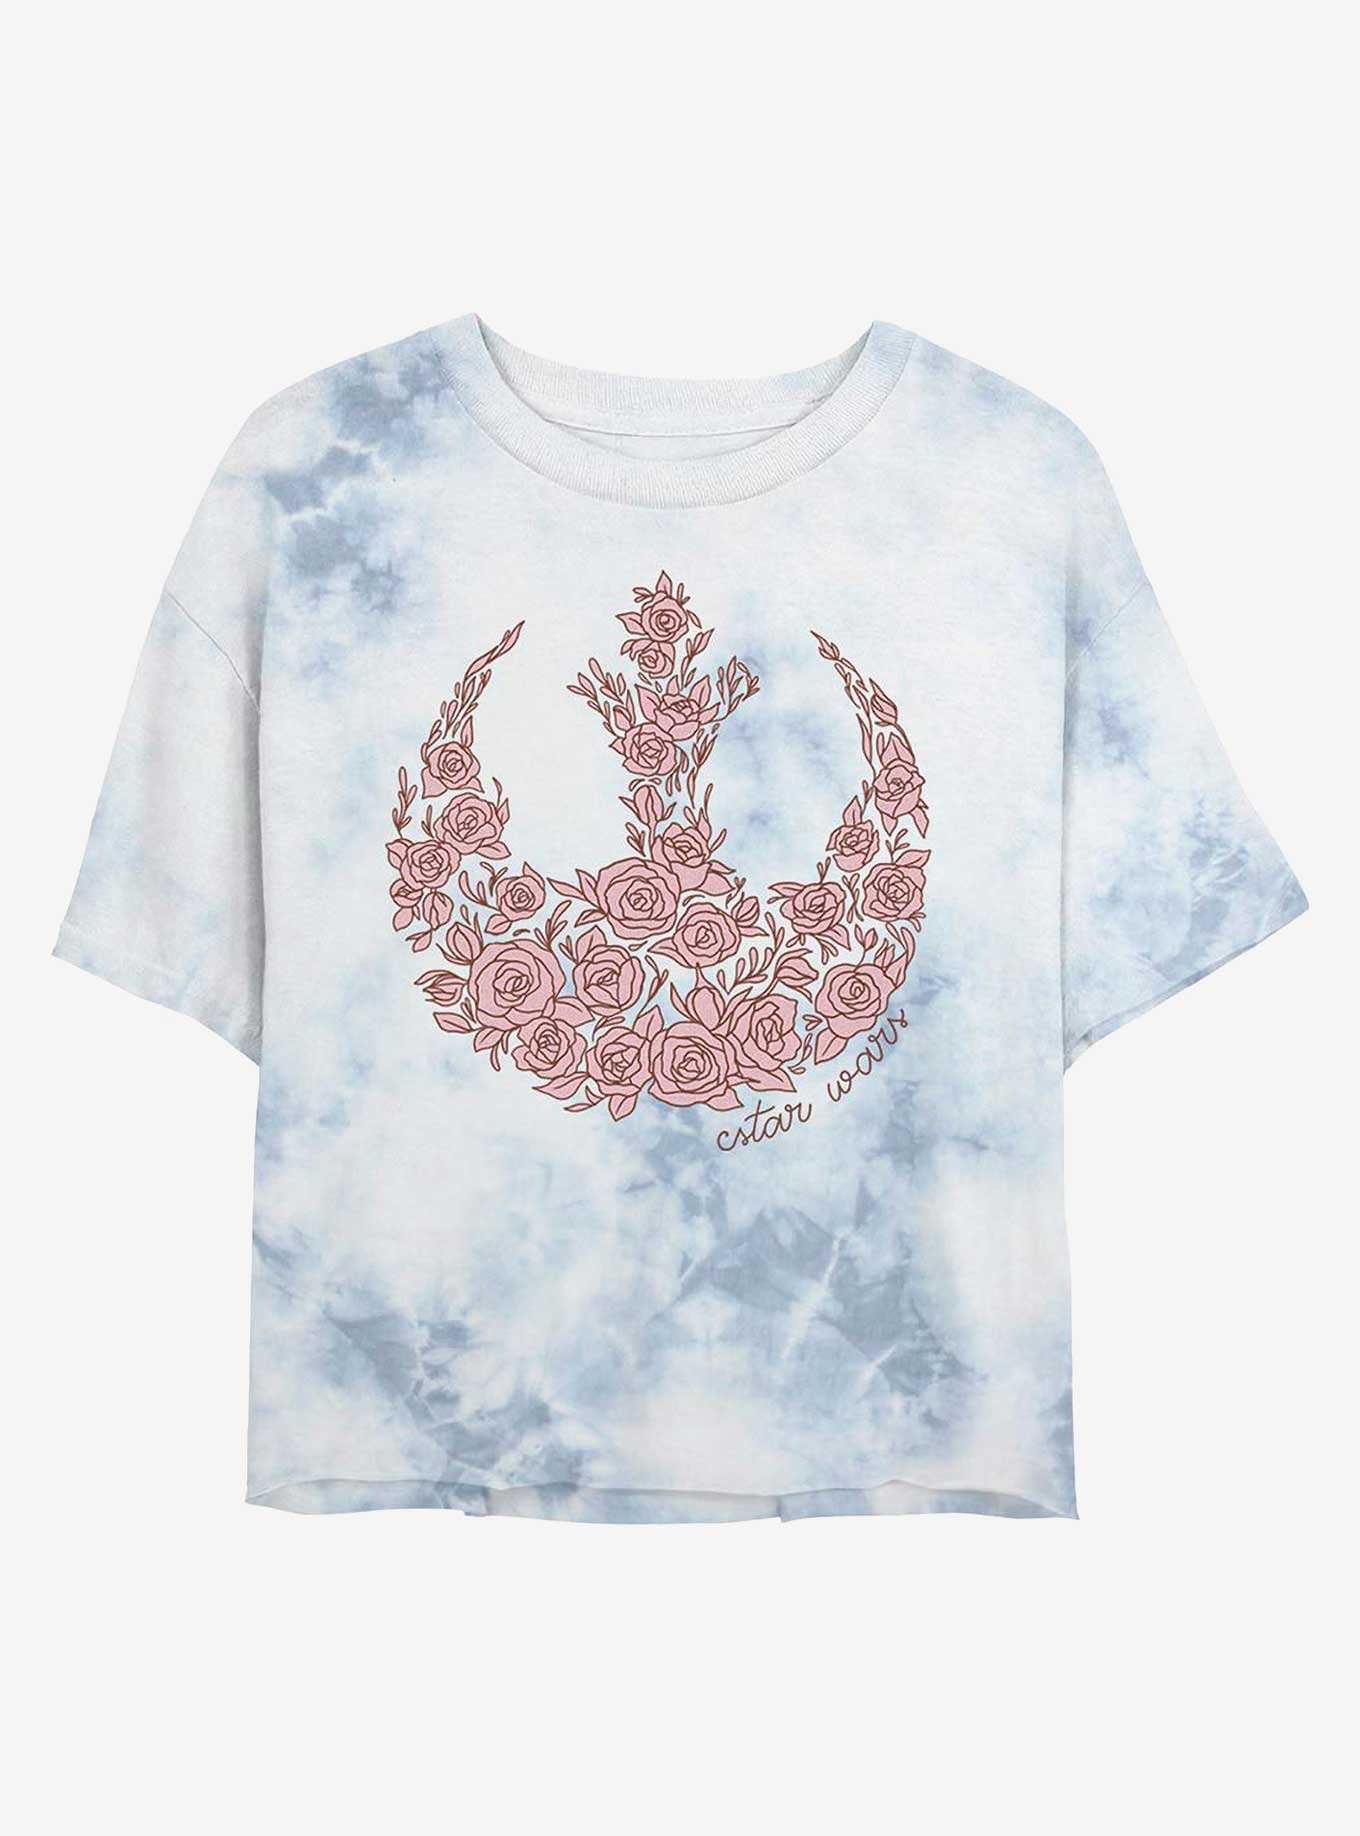 Star Wars Rose Rebel Tie-Dye Girls Crop T-Shirt, , hi-res